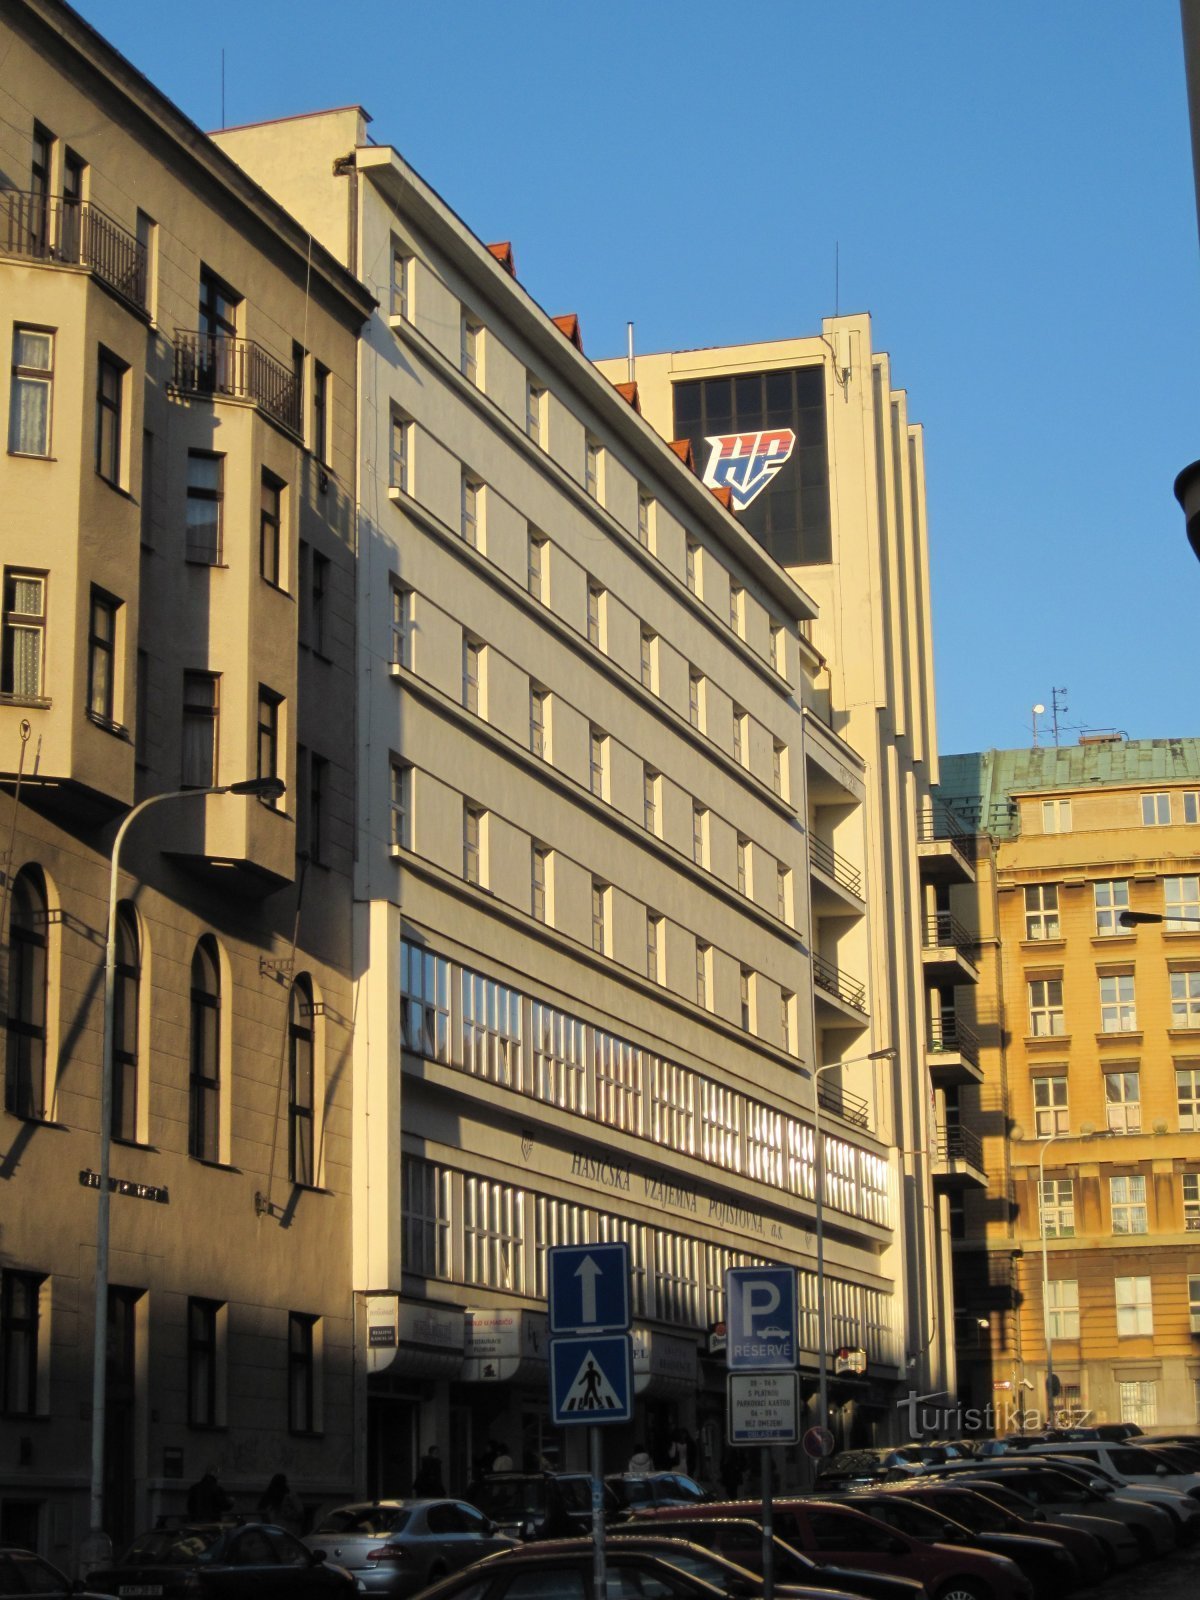 Hasičská gensidige forsikringsselskabs bygning, hvor U Hasičů Teatret ligger